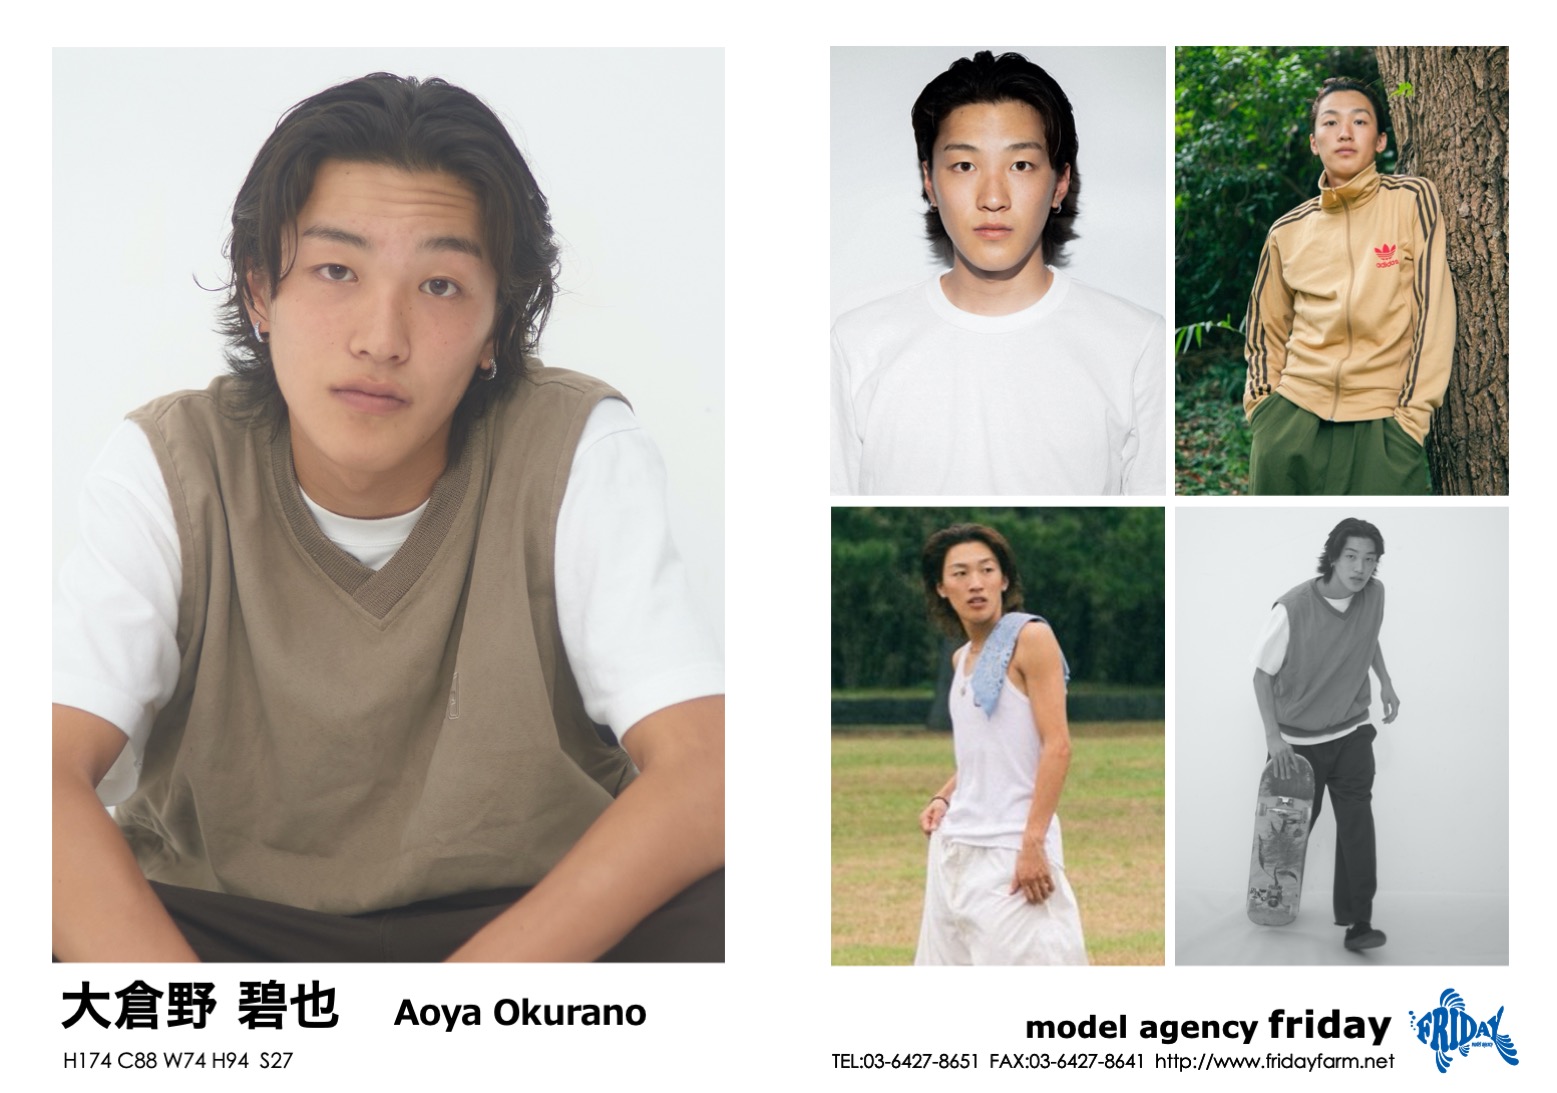 大倉野 碧也 - Aoya Okurano | model agency friday